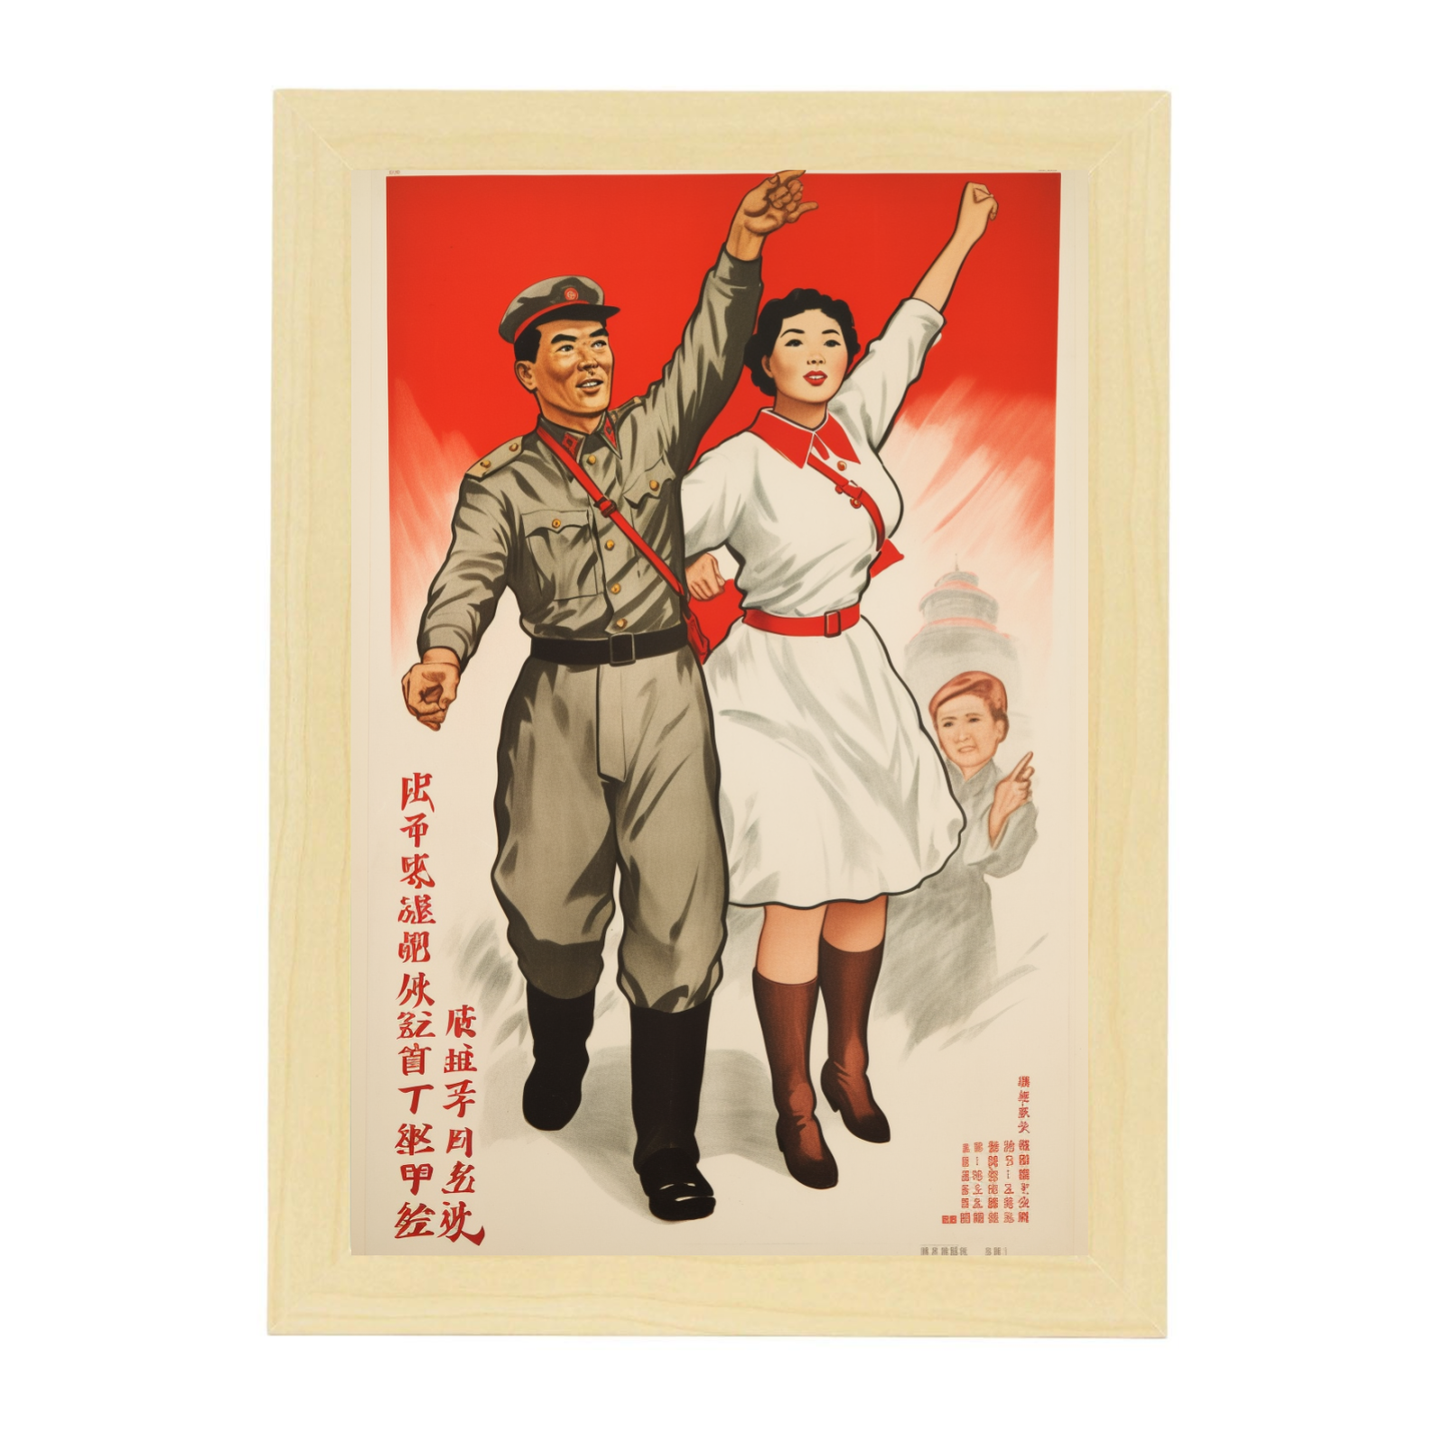 Lámina de Reclutamiento Partido Comunista Chino Años 50